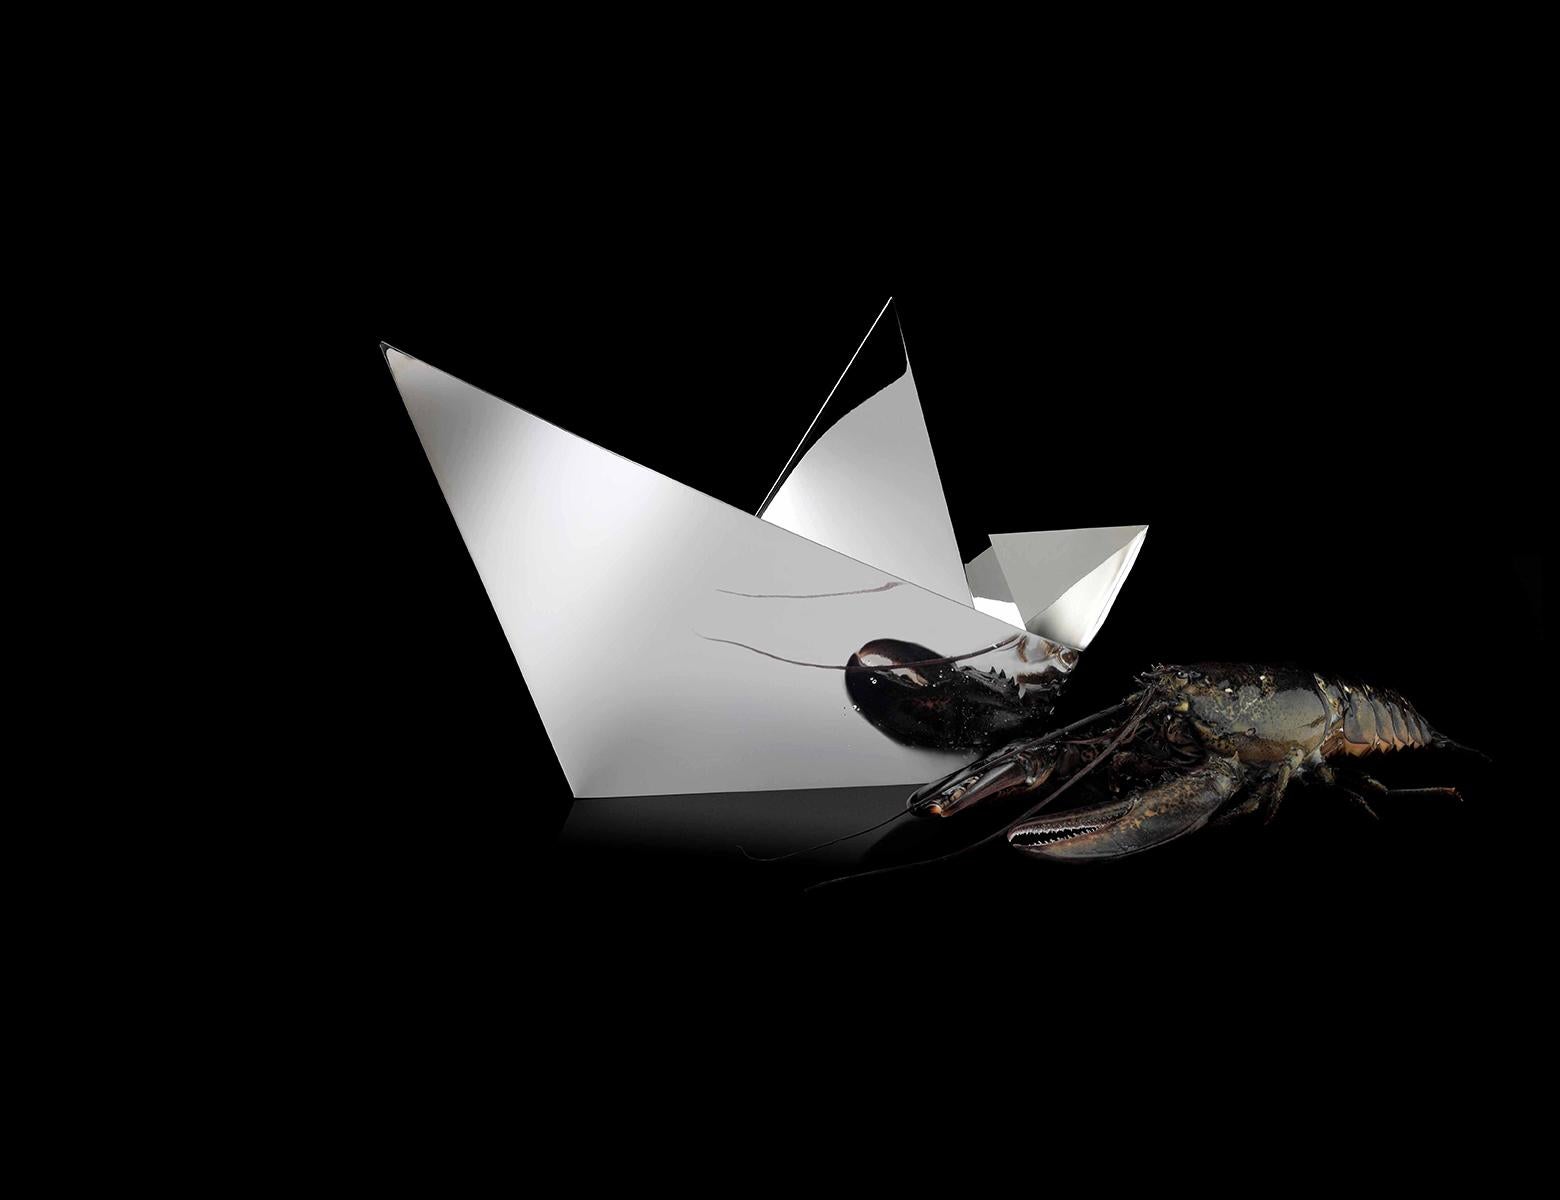 Paper Boat ist ein Tafelaufsatz aus dünnen silbernen Metallschichten, die meisterhaft gebogen wurden, um die Form eines Origami-Papierschiffs nachzubilden. Dieses von Aldo Cibic für Paola C. entworfene Objekt ist eine echte Skulptur, raffiniert und